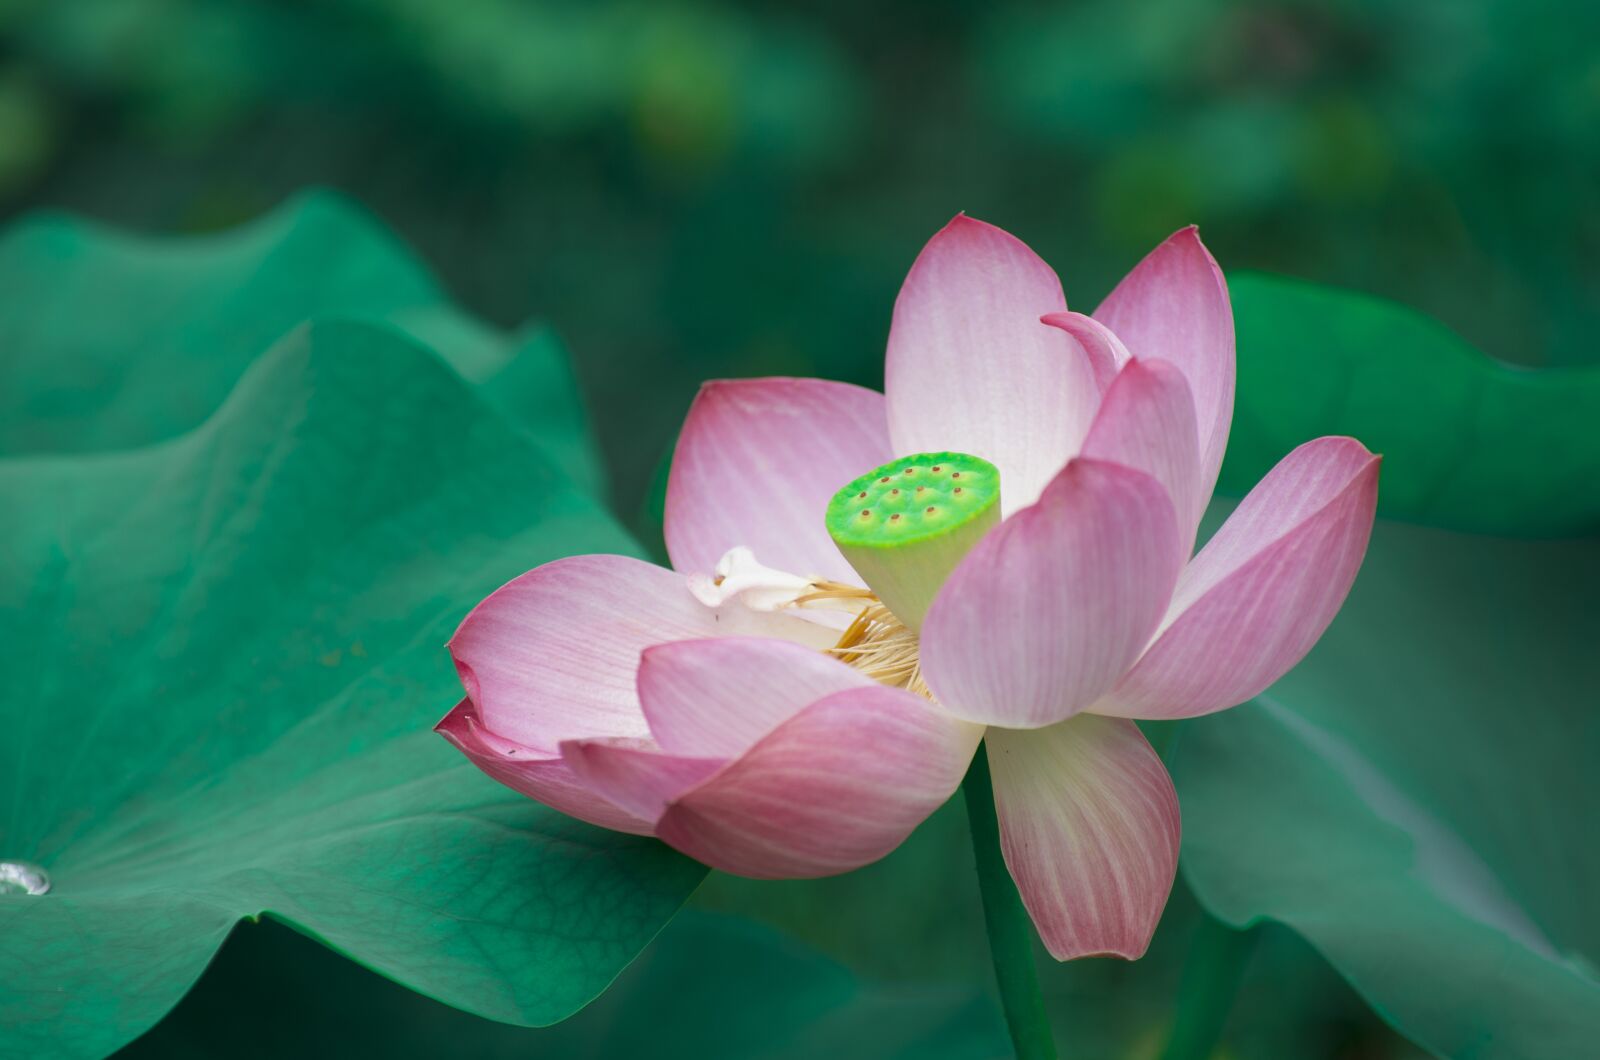 Pentax K-5 sample photo. Lotus, flower photography